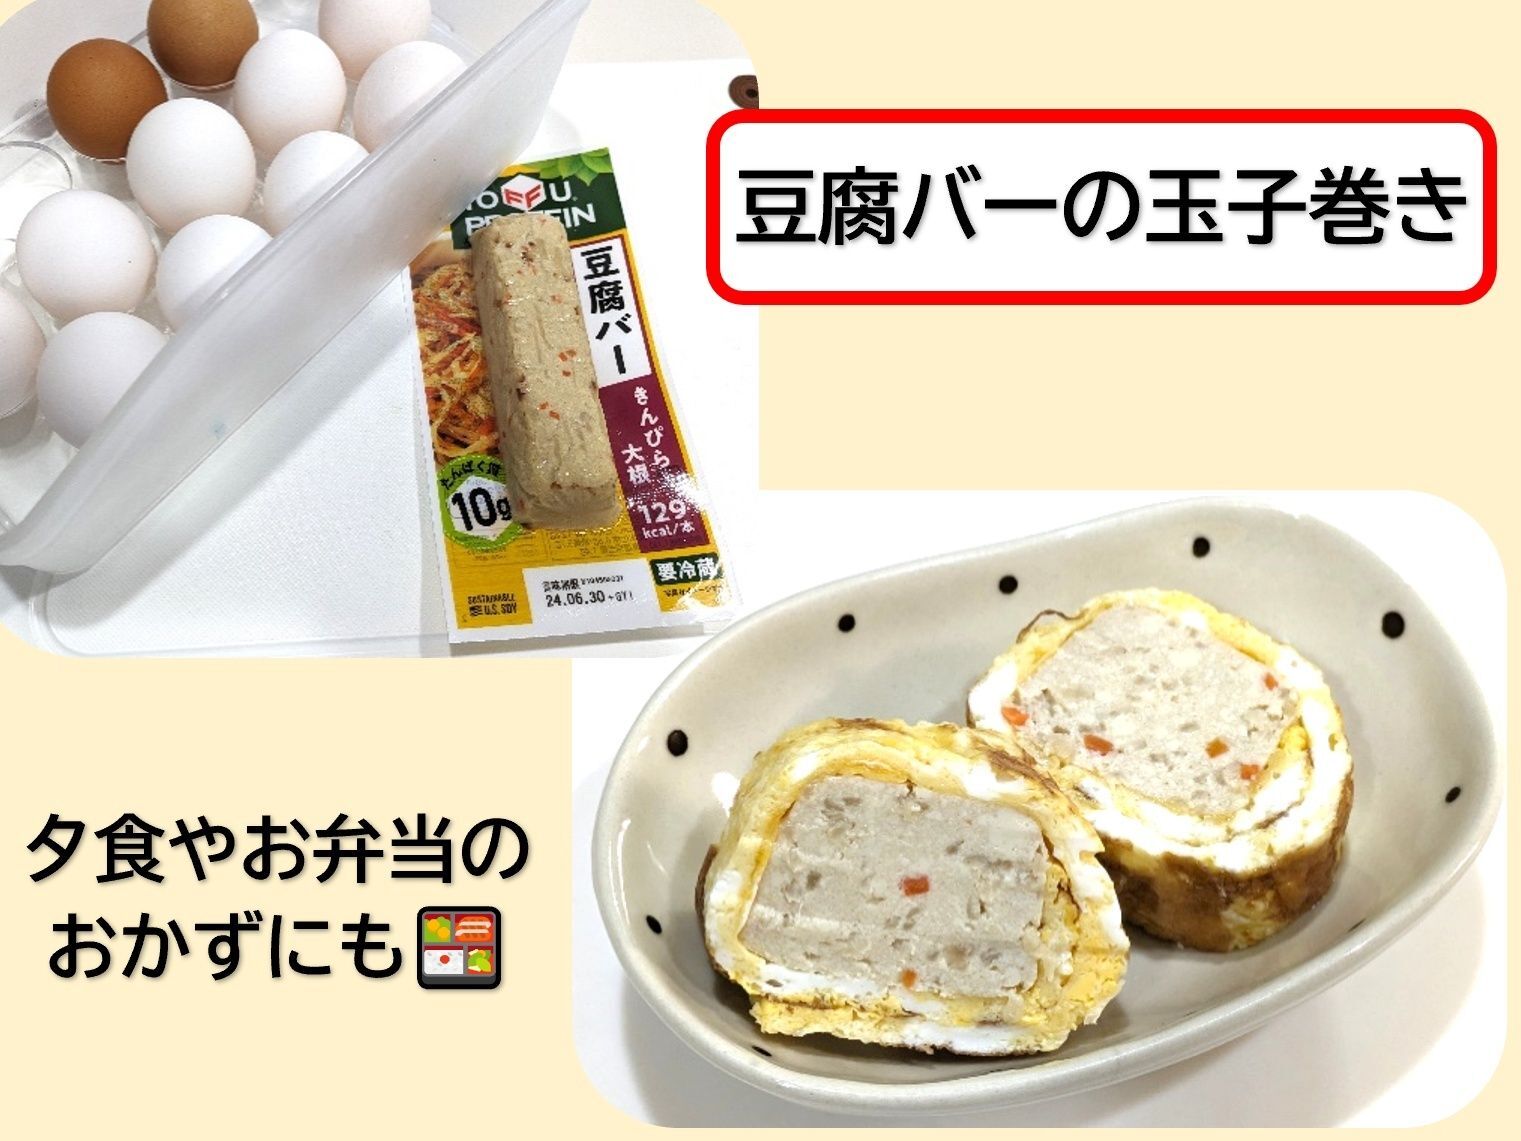 メニュー③豆腐バーの玉子焼き